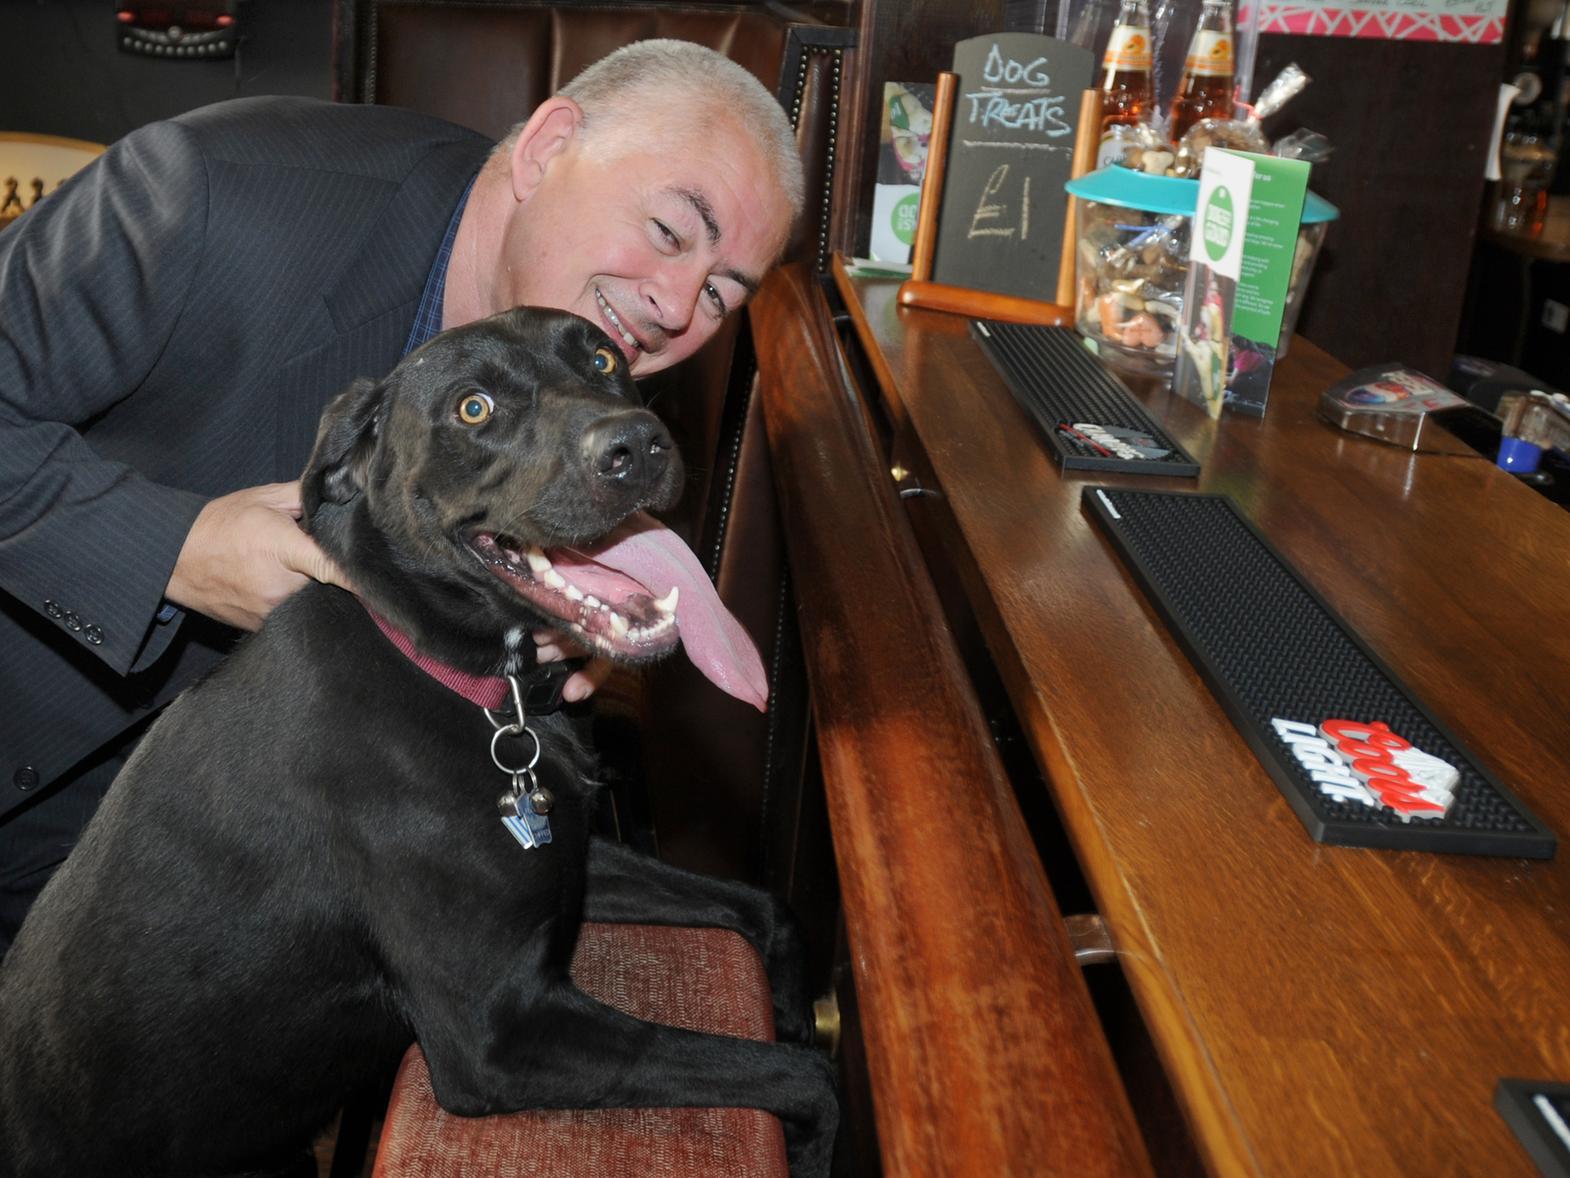 A dog-friendly pub.